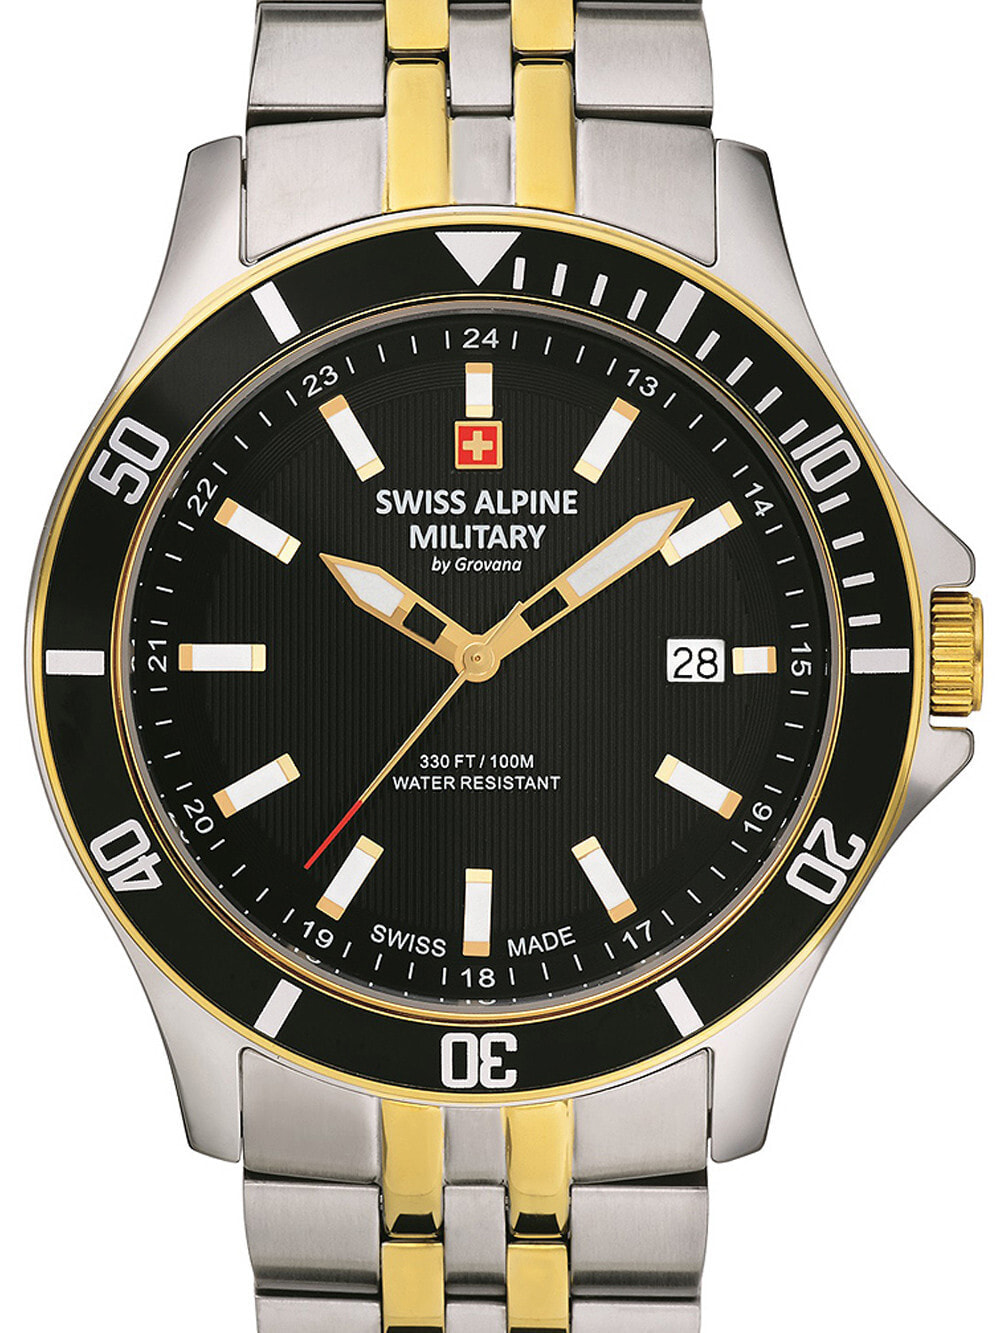 Мужские наручные часы с серебряным браслетом Swiss Alpine Military 7022.1147 mens 42mm 10ATM